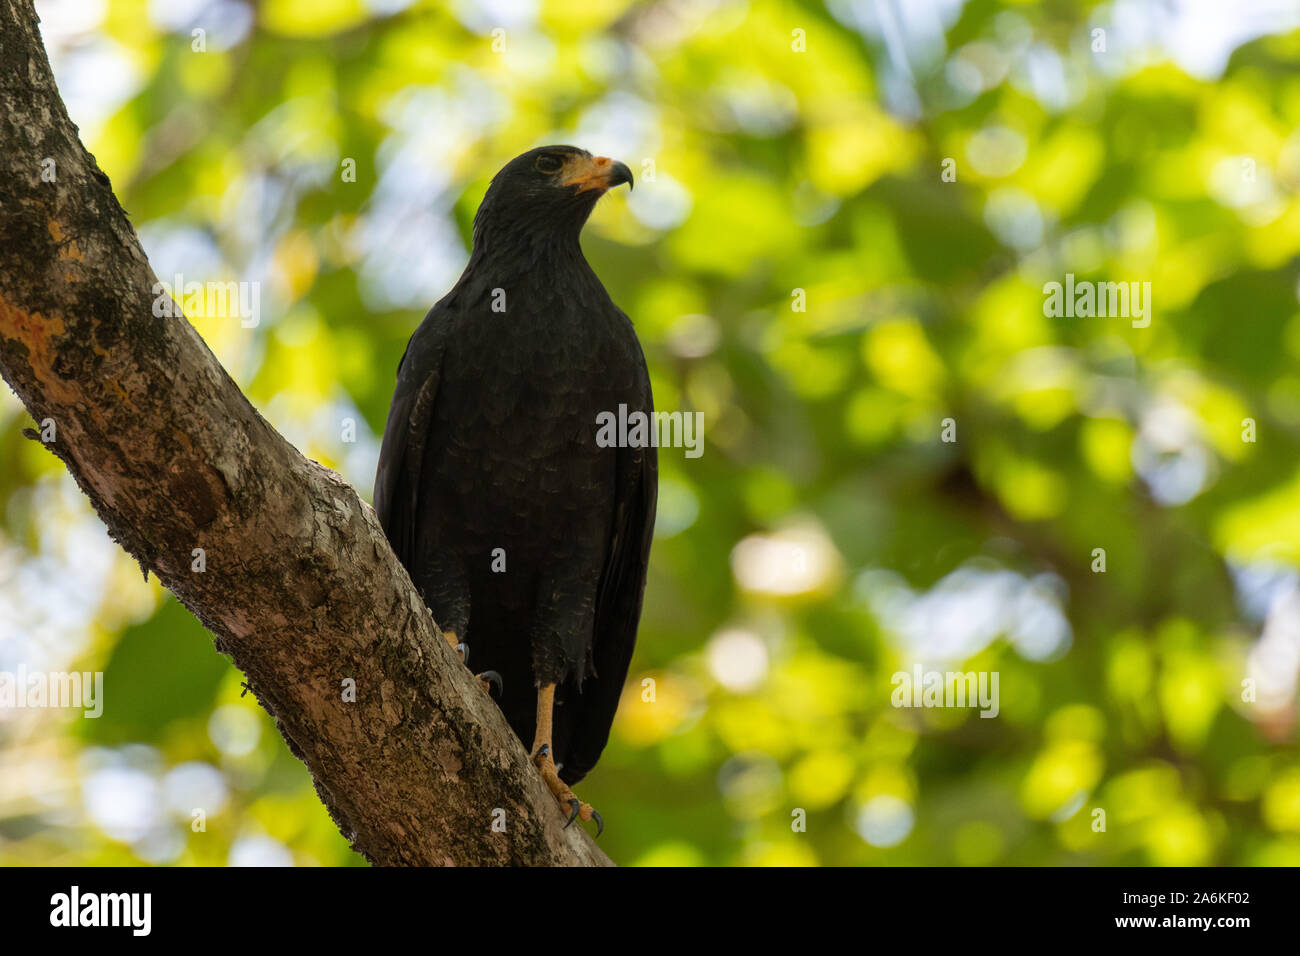 A Common Black Hawk in Costa Rica Stock Photo